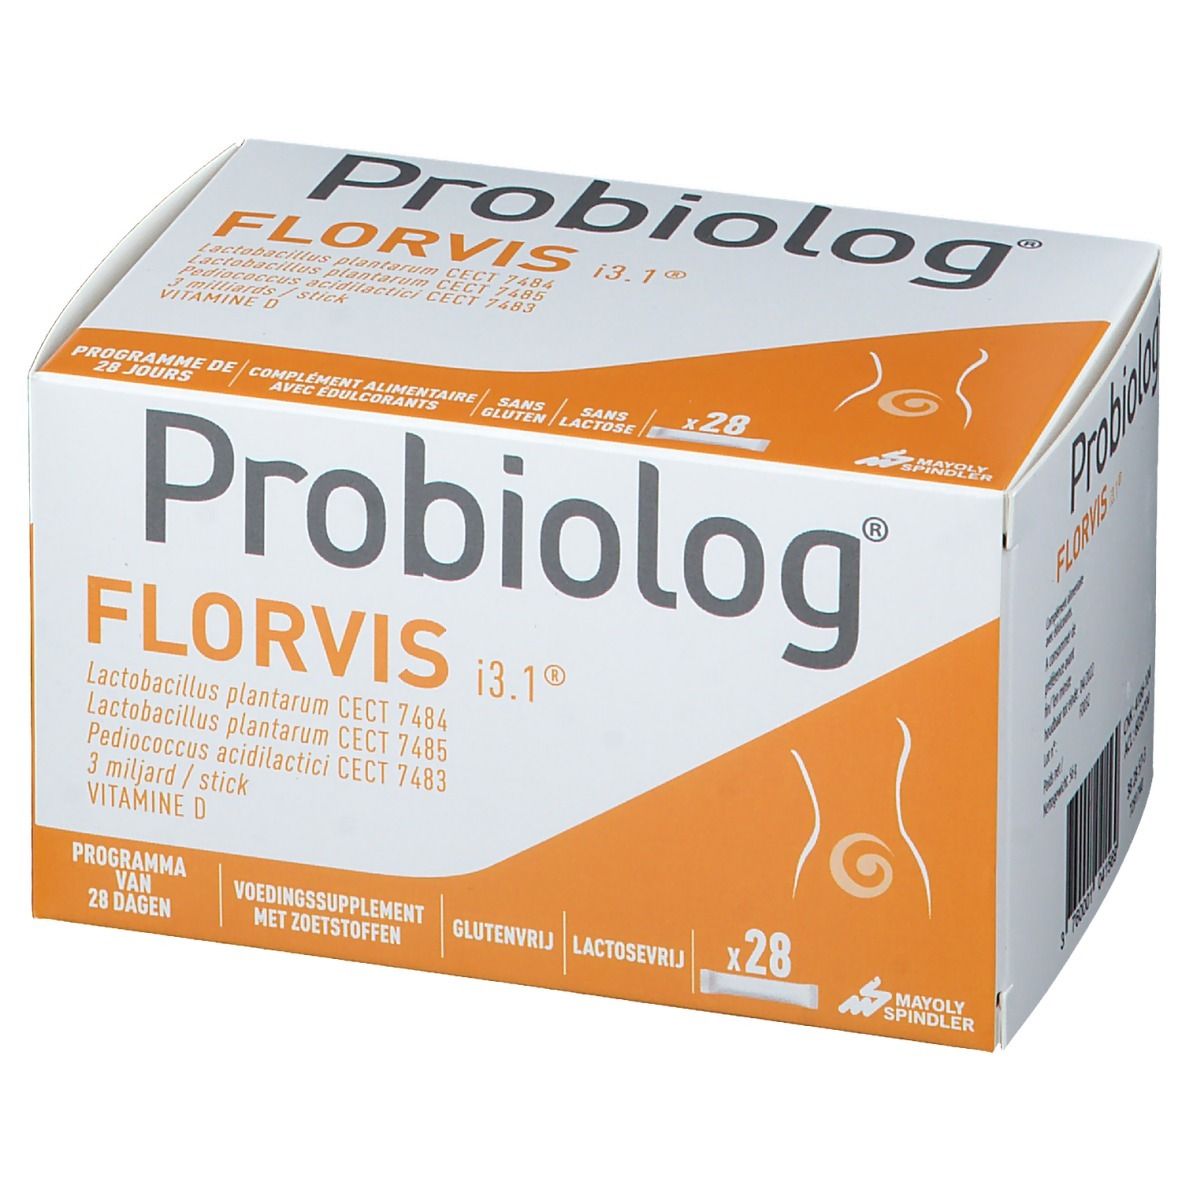 Probiolog® FLORVIS i3.1